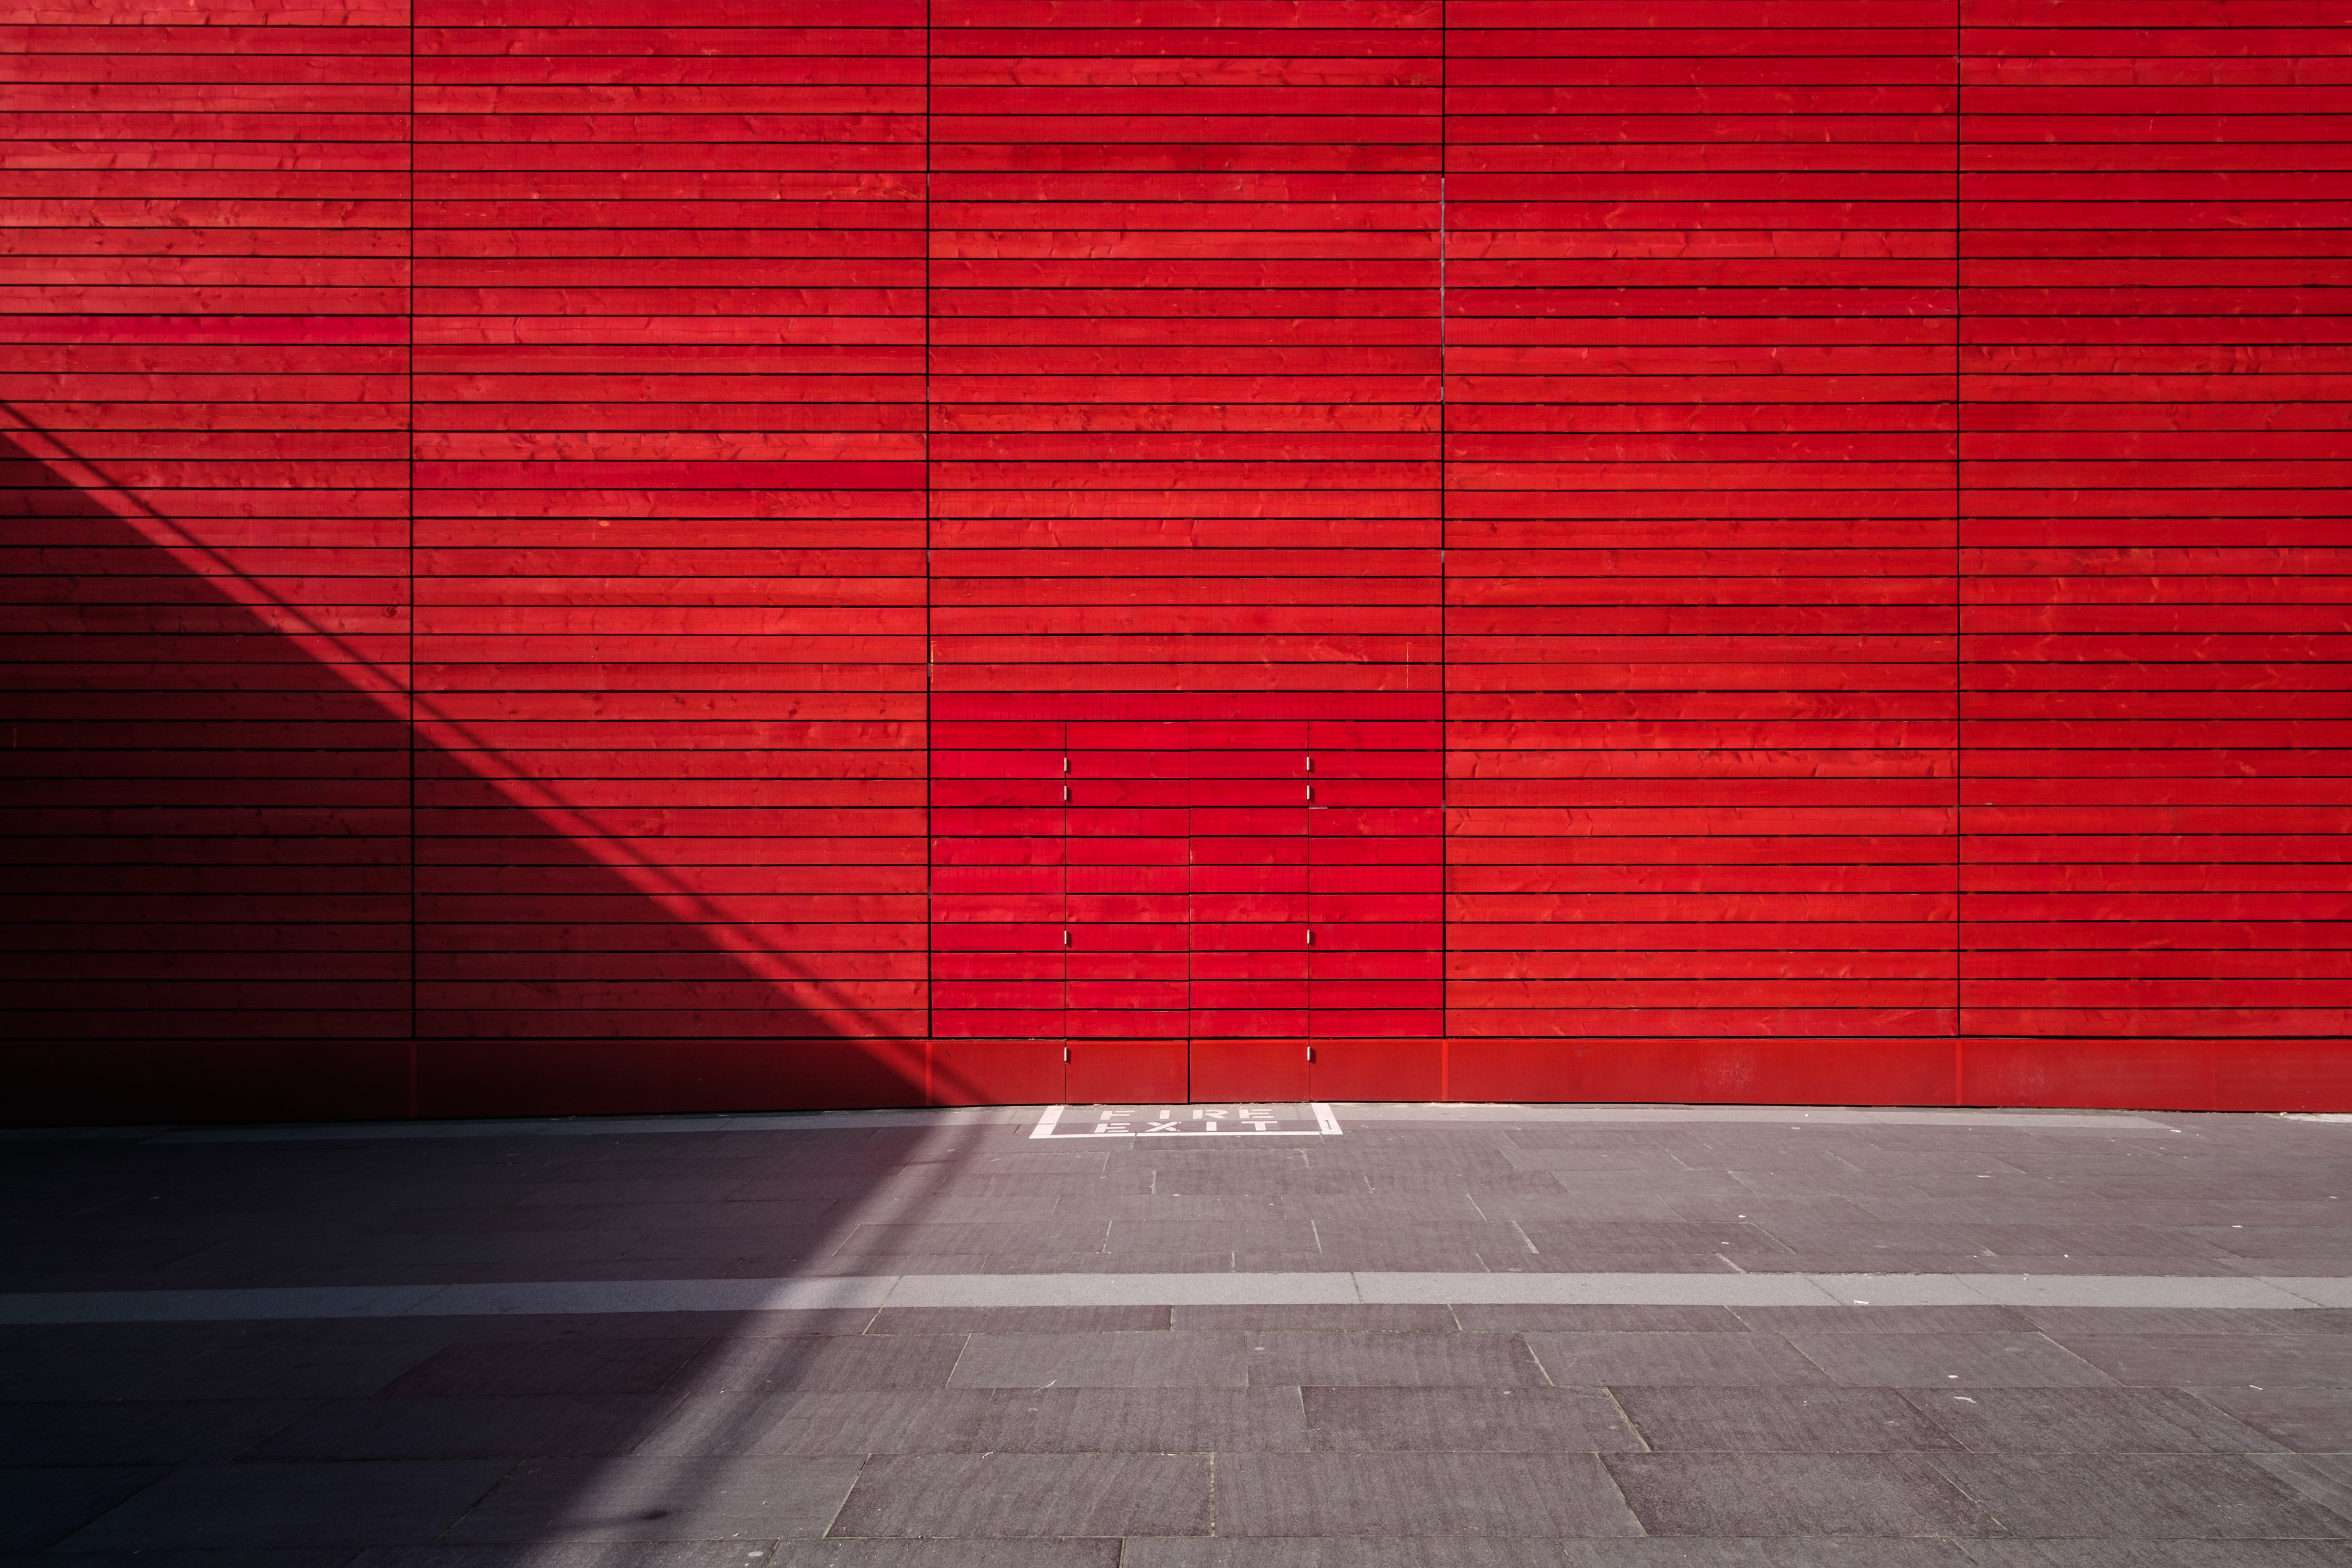 Red Exit Door Wall 4759x3173